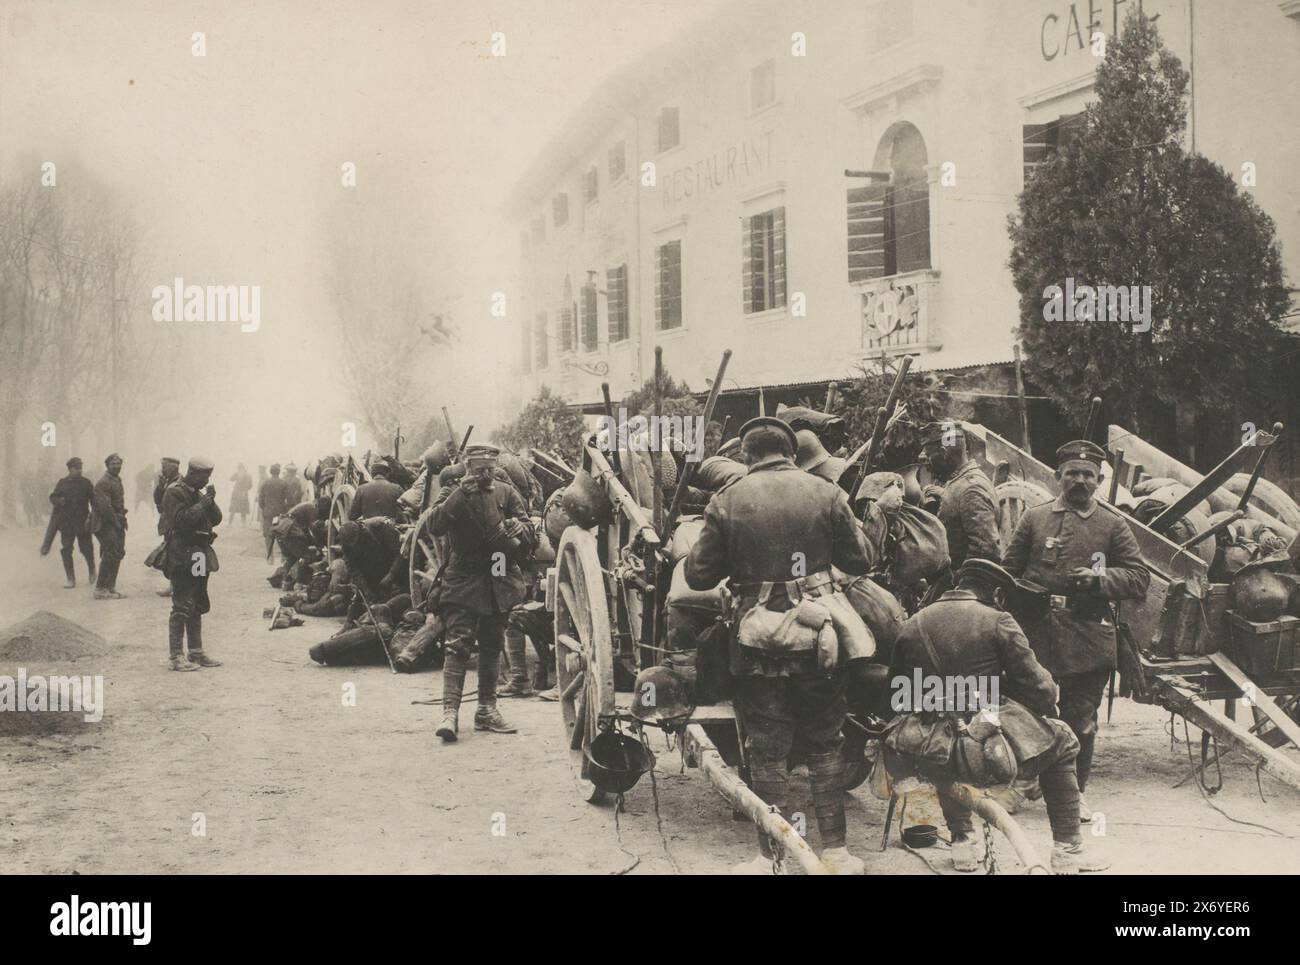 Les soldats allemands se reposent pendant le transport de troupes, photographie, anonyme, Allemagne, 1914 - 1918, papier baryta, impression gélatineuse argentée, hauteur, 270 mm × largeur, 378 mm Banque D'Images